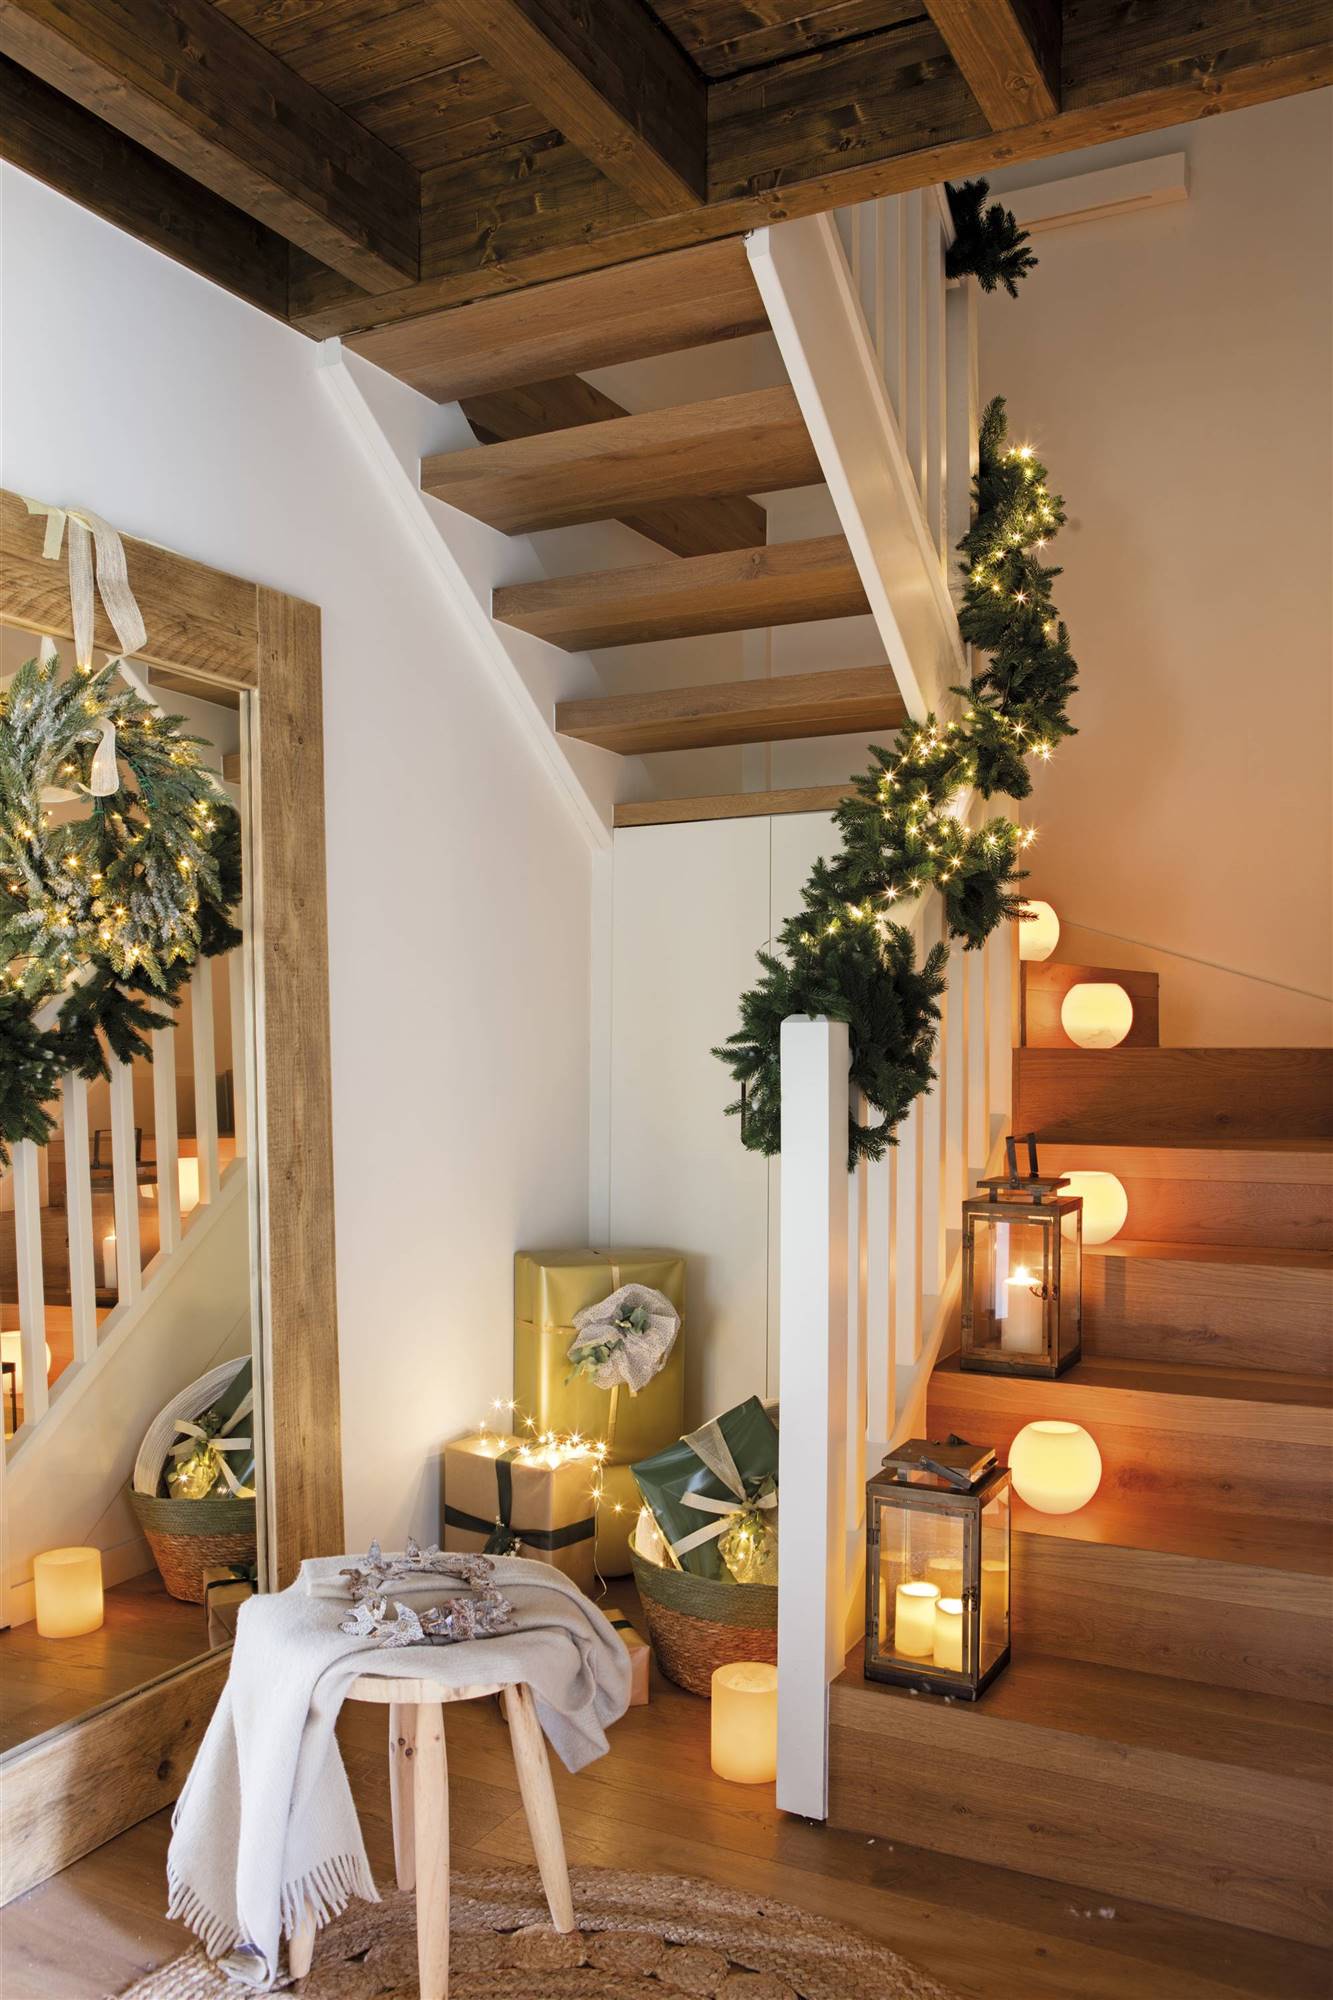 Recibidor de Navidad con las escaleras decoradas 